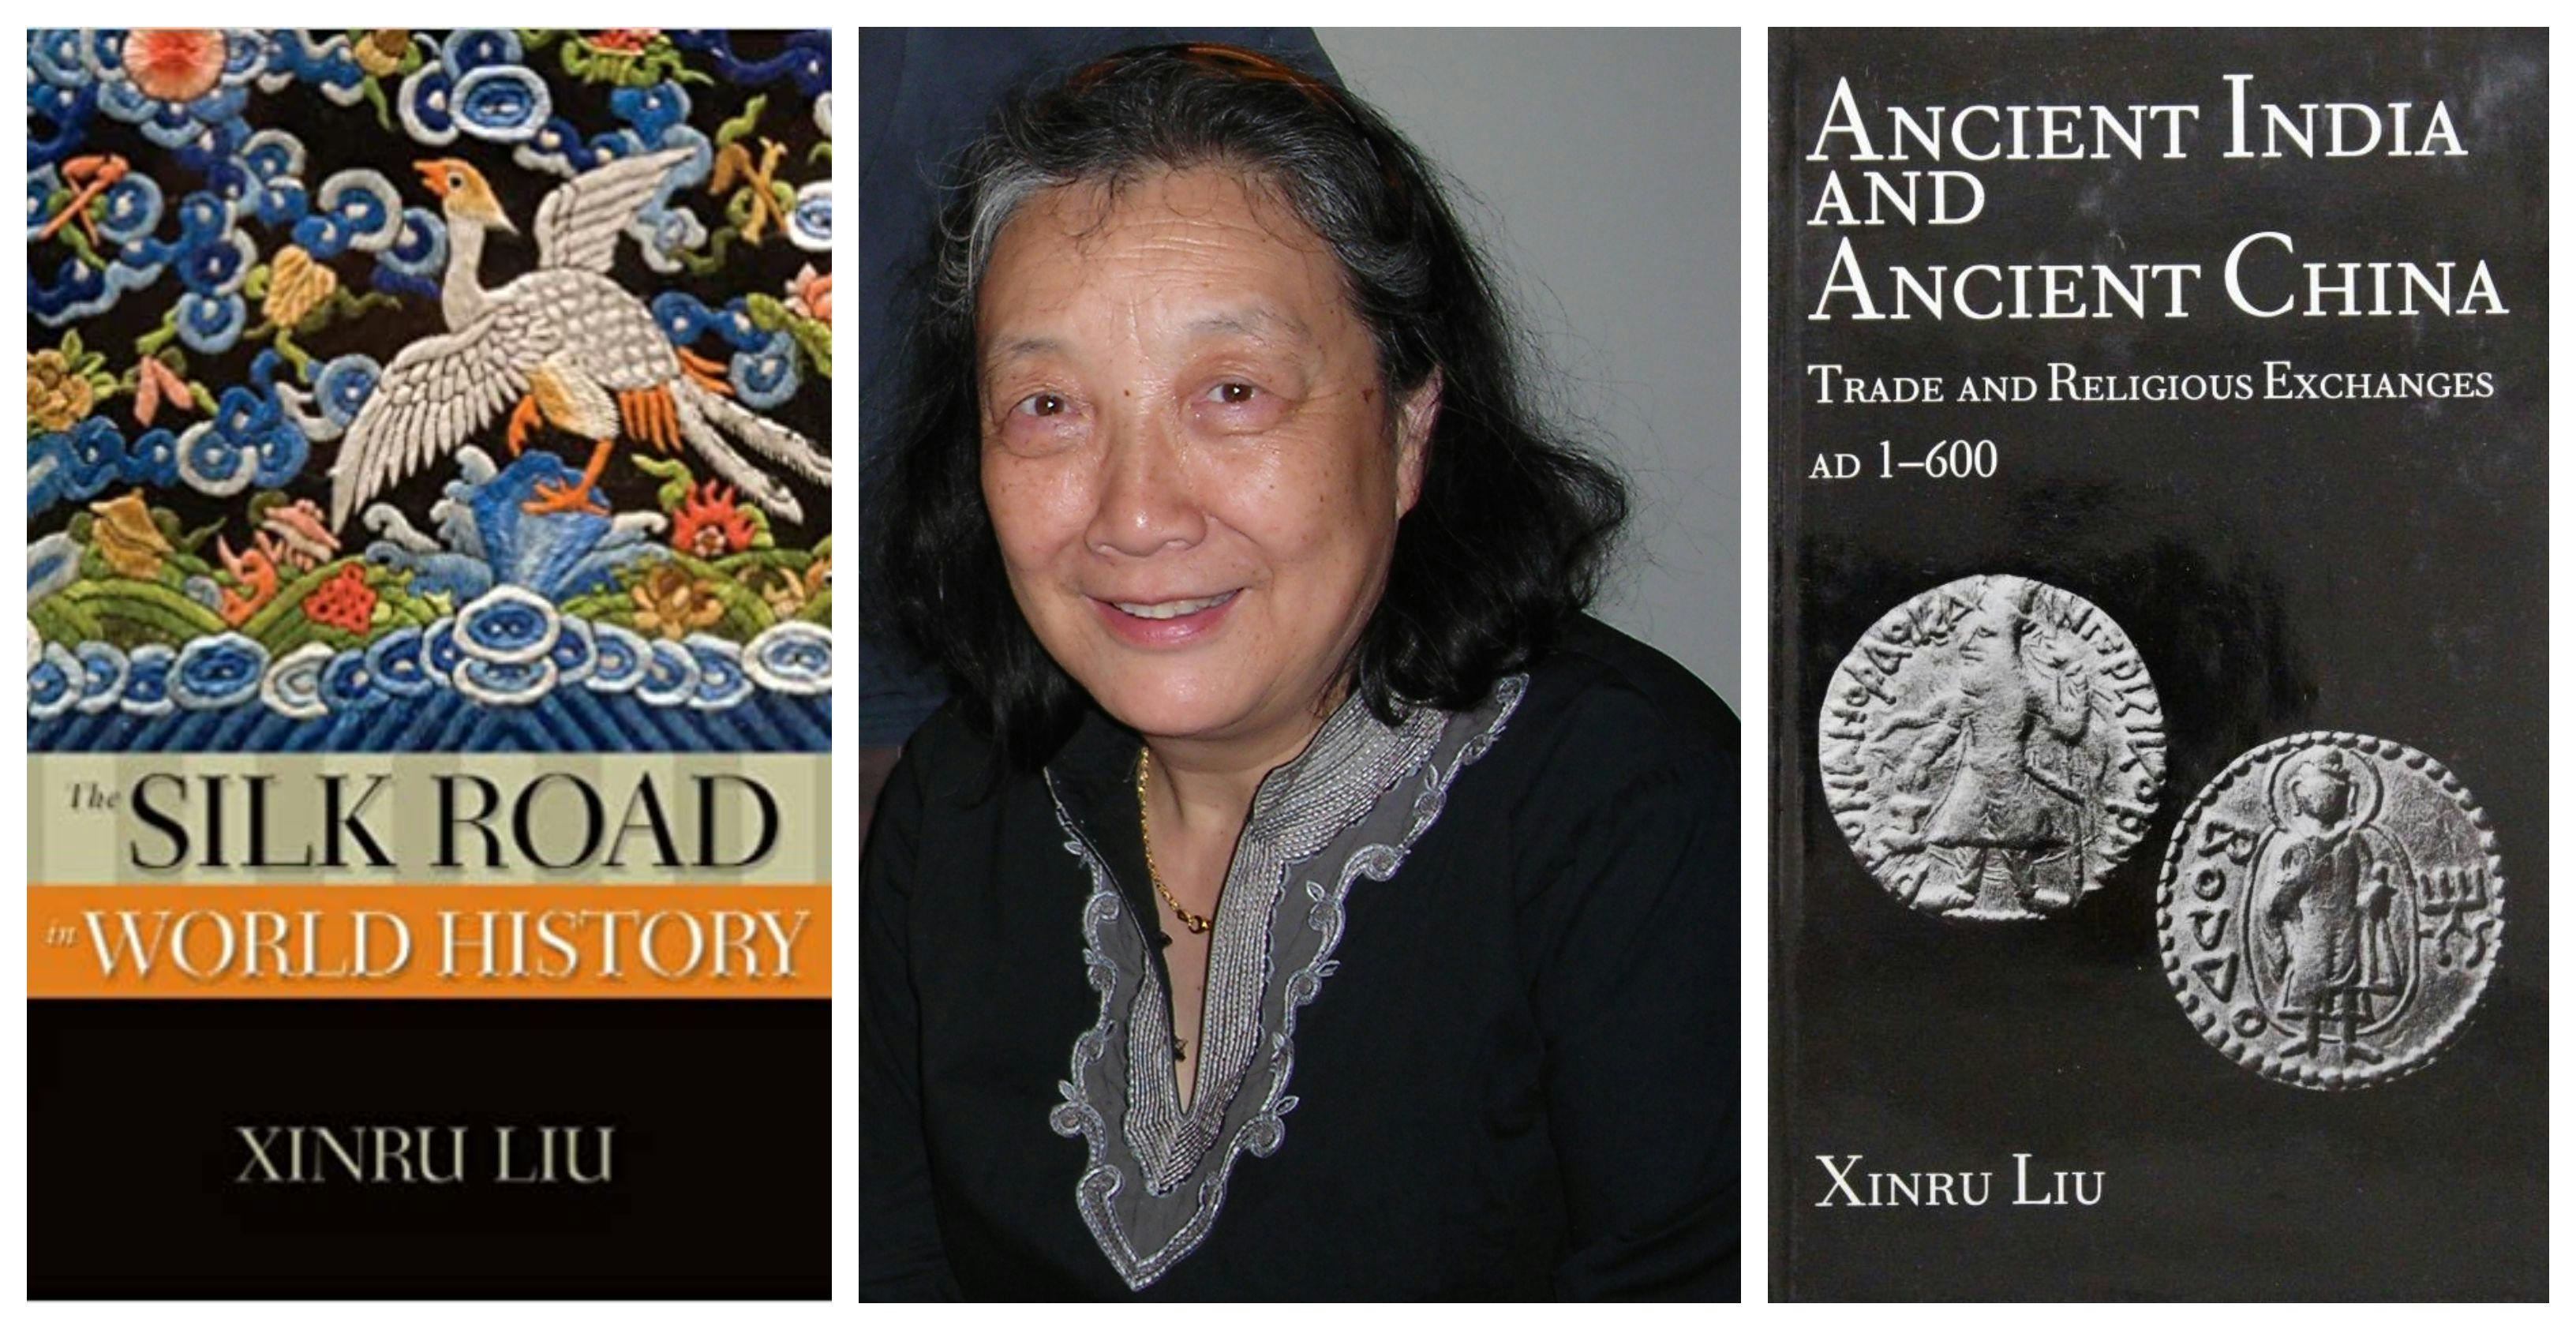 Prof Xinru Liu and her books